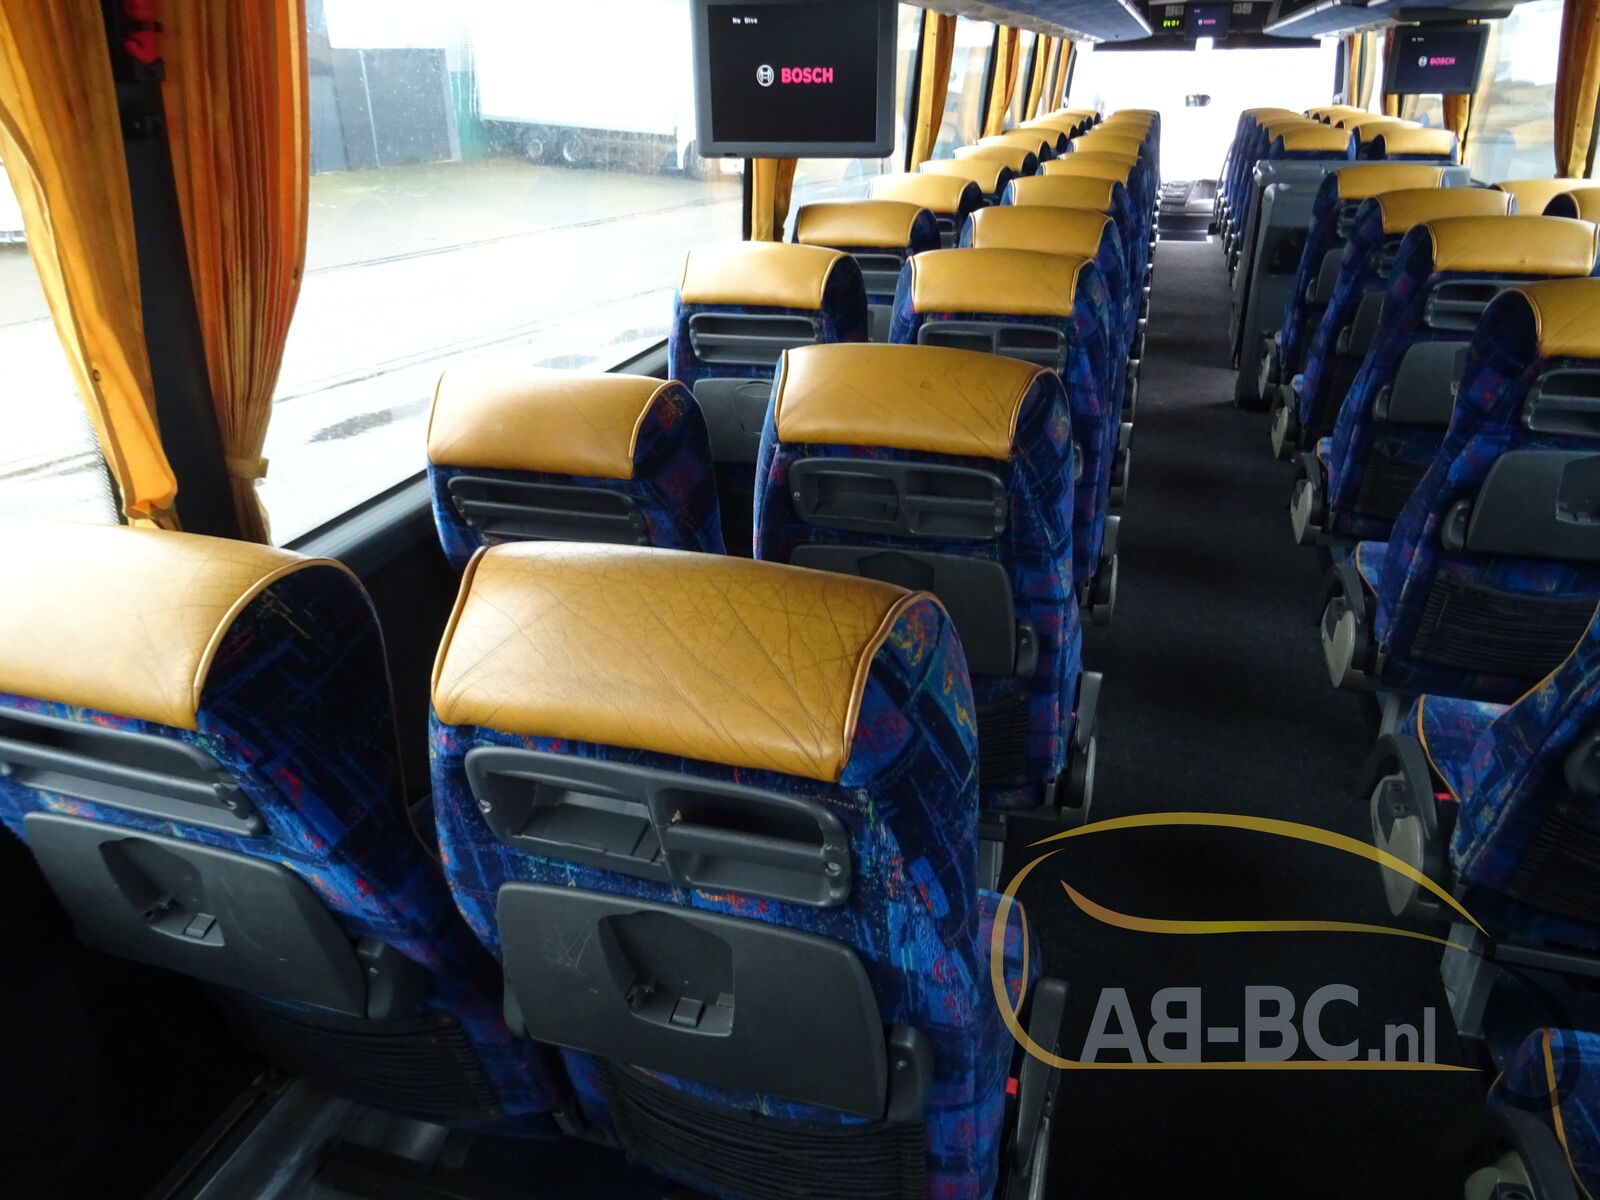 coach-bus-VDL-BOVA-Magiq-61-Seats---1641303514212115448_orig_319708bca5488ab8cbfea0285fed8009--22010415282369368500